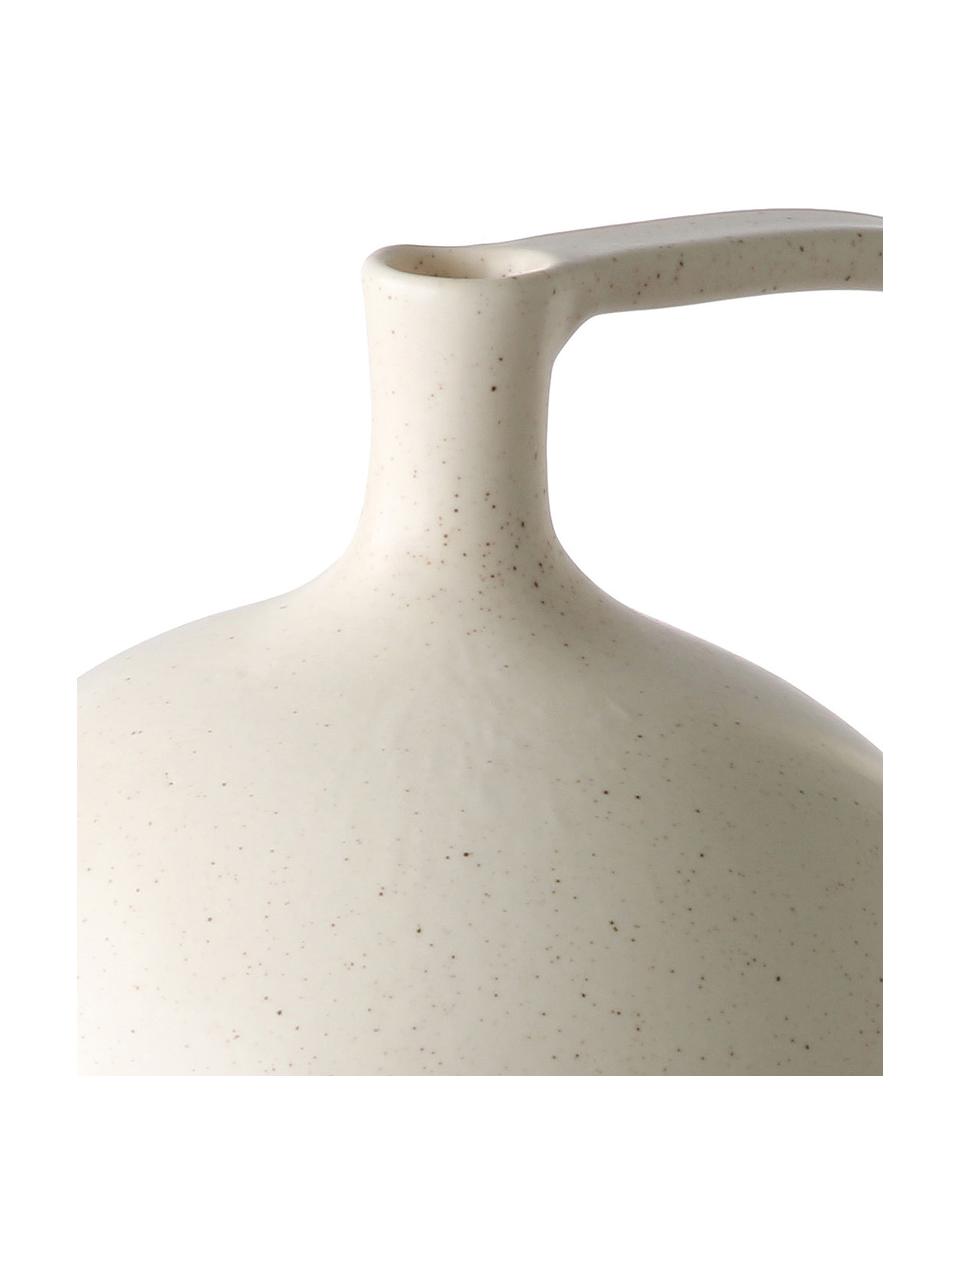 Vase en grès cérame Jar, Grès cérame, Couleur crème, larg. 18 x haut. 20 cm